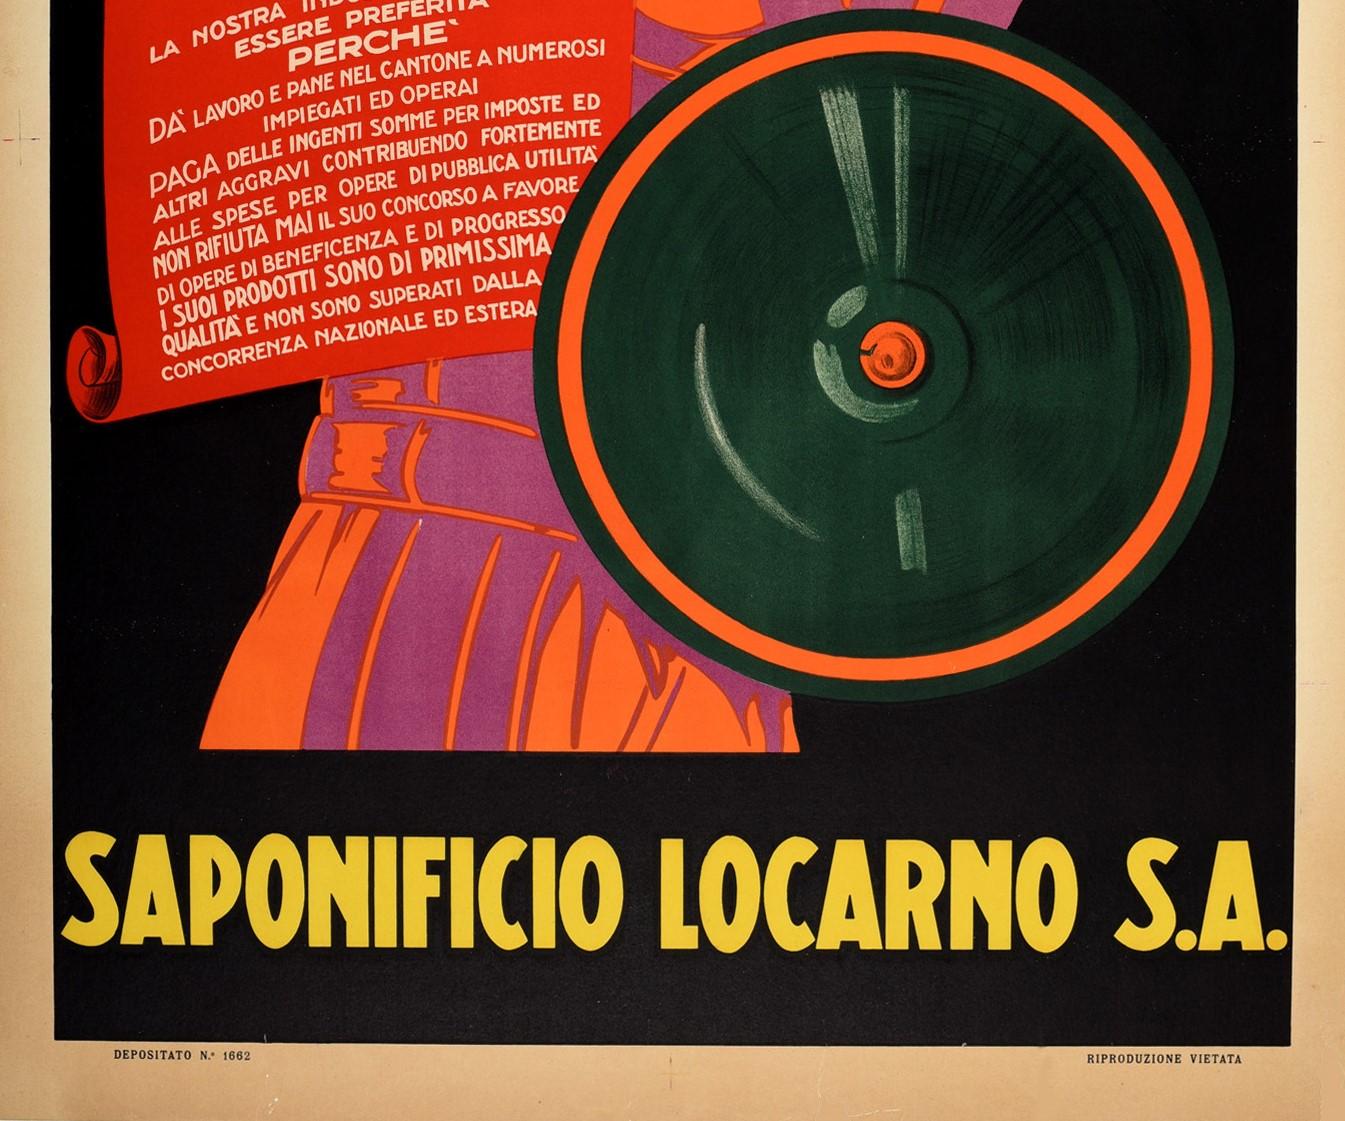 Art Deco Original Vintage Advertising Poster For Saponificio Locarno Roman Warrior Design For Sale